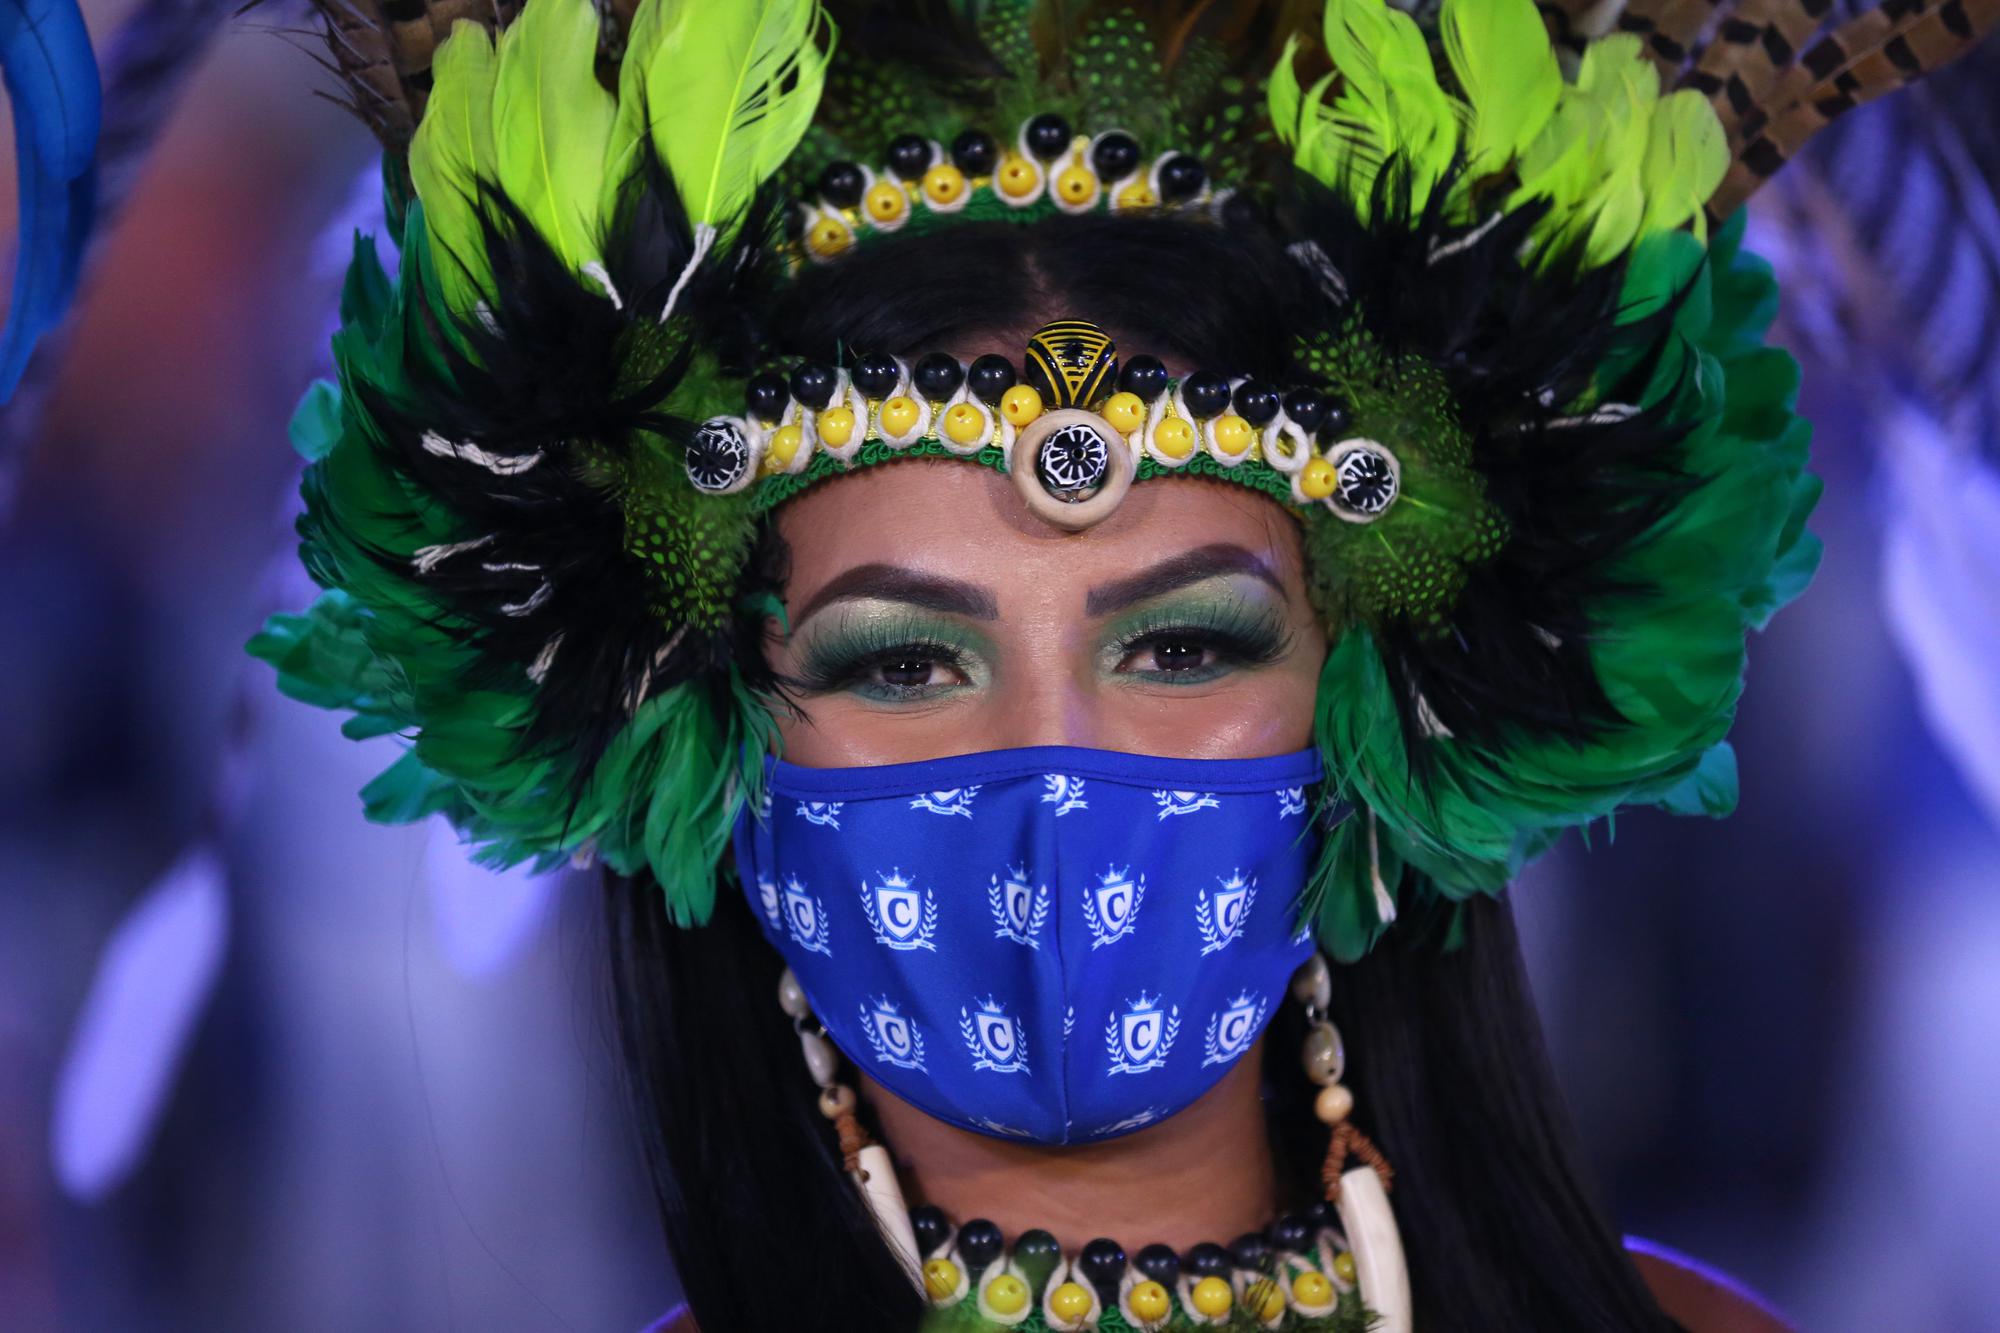 Carnaval de Rio : le Brésil retrouve des couleurs bien méritées